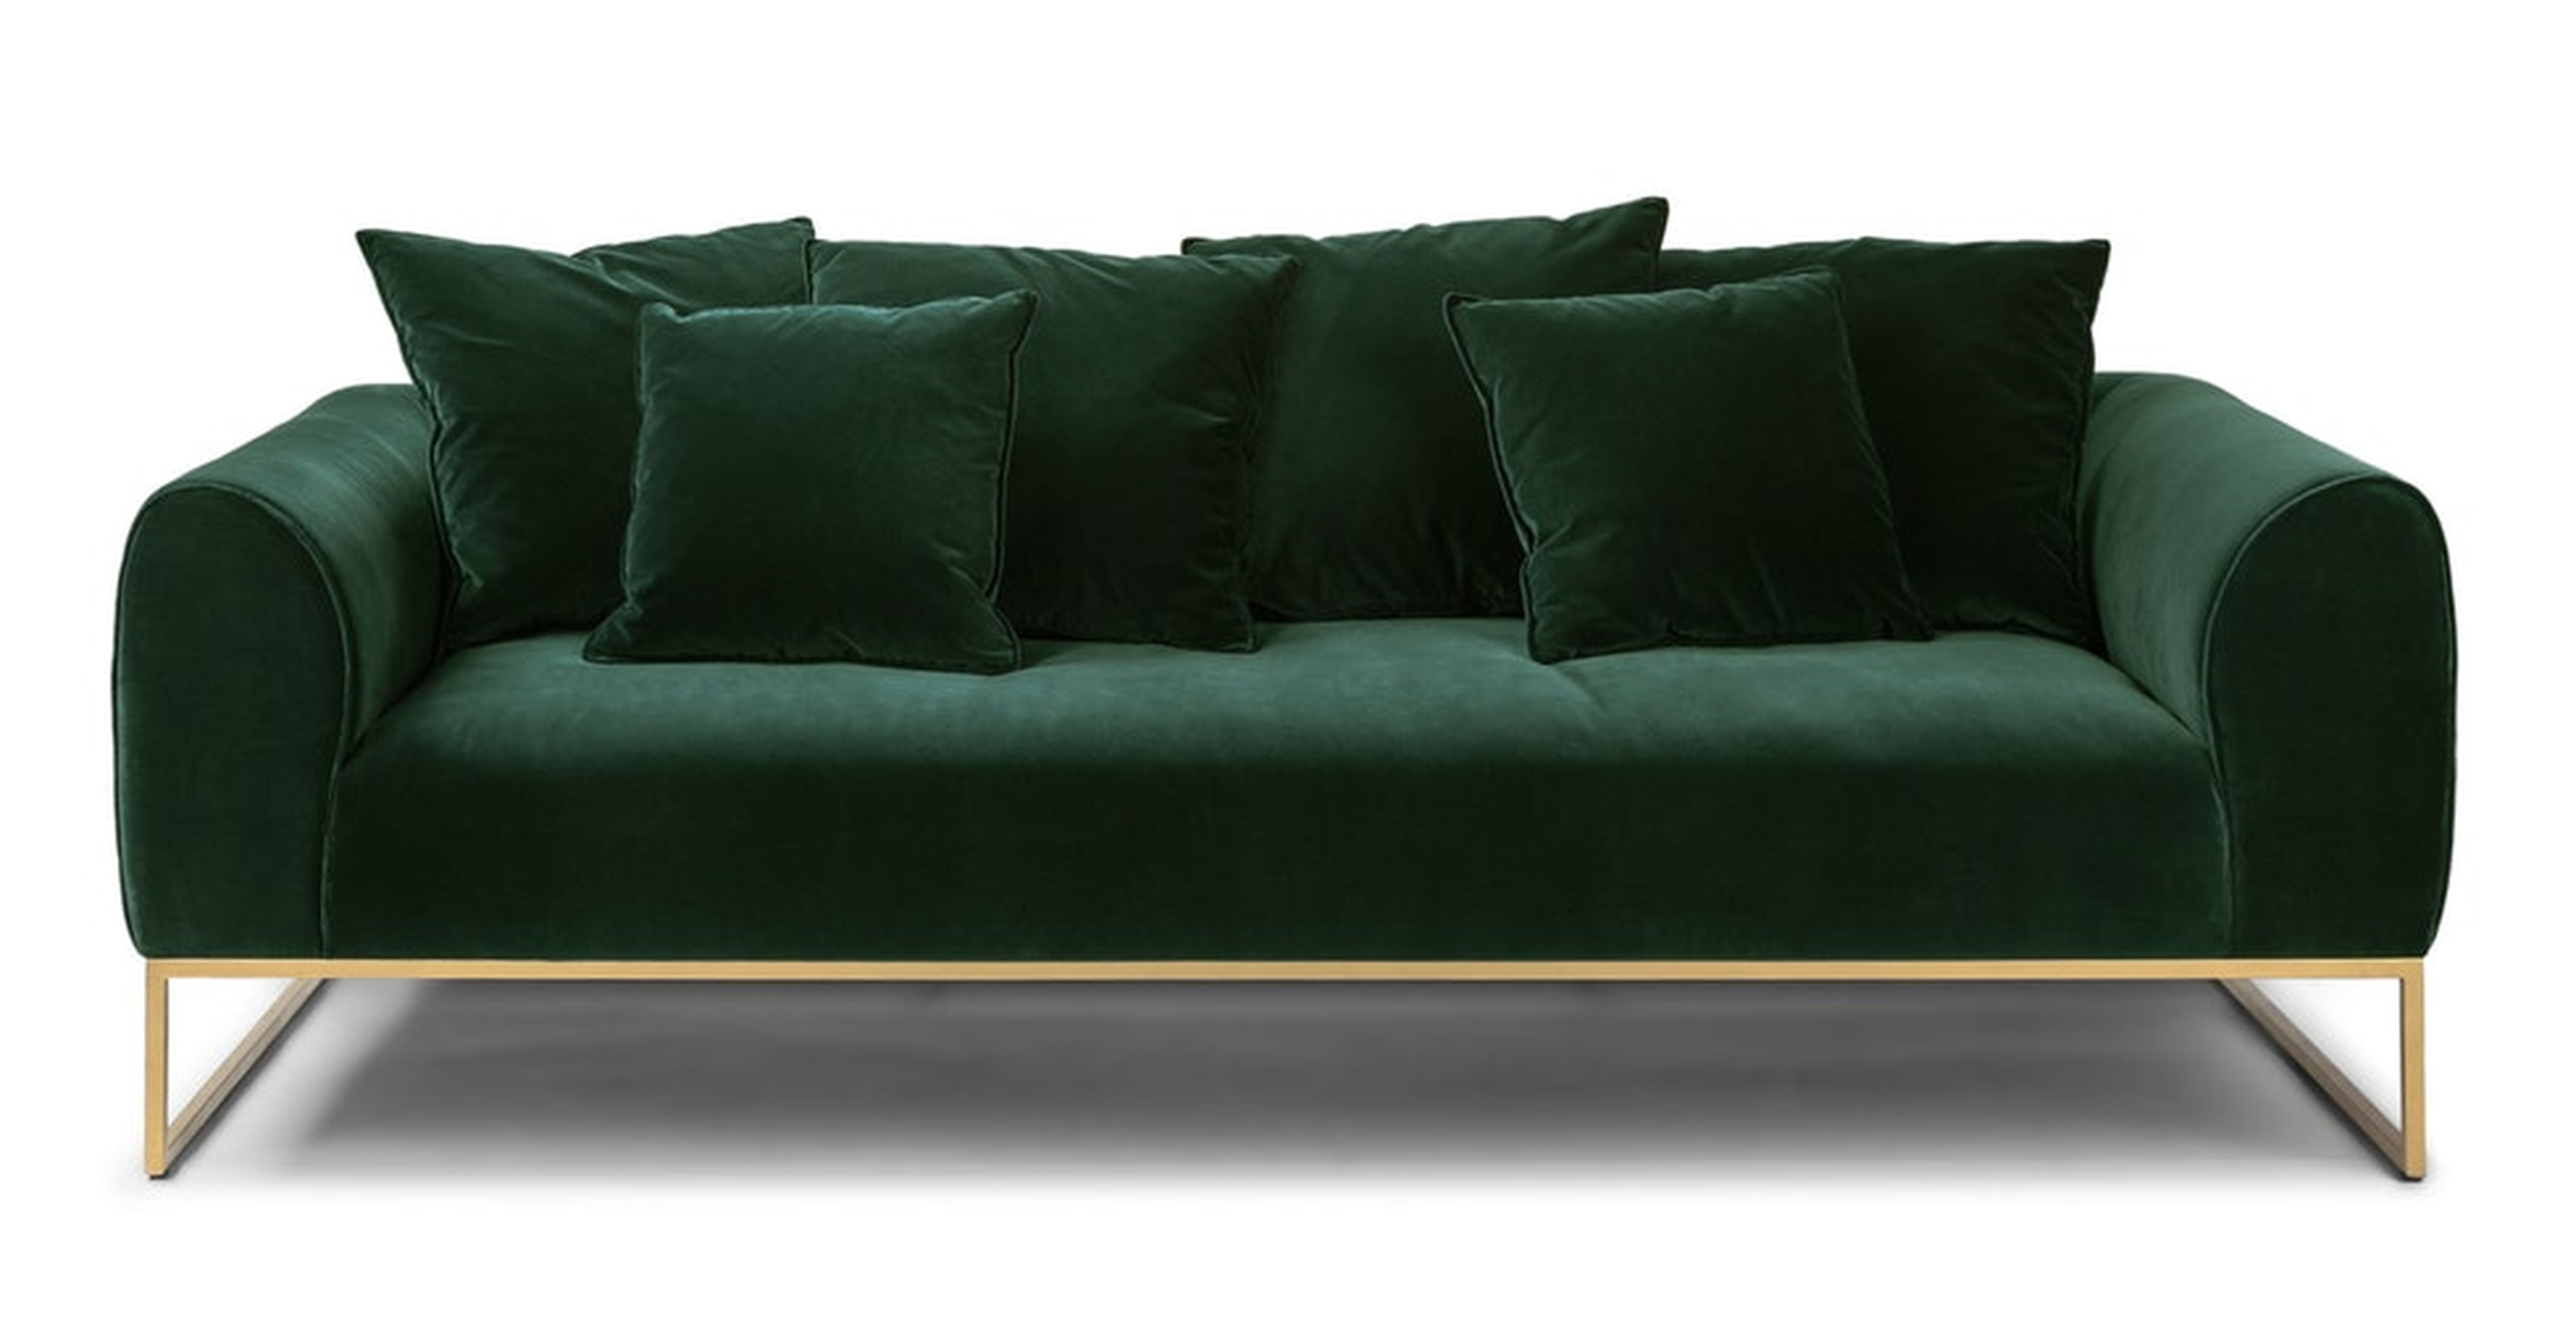 Kits Balsam Green Sofa - Article